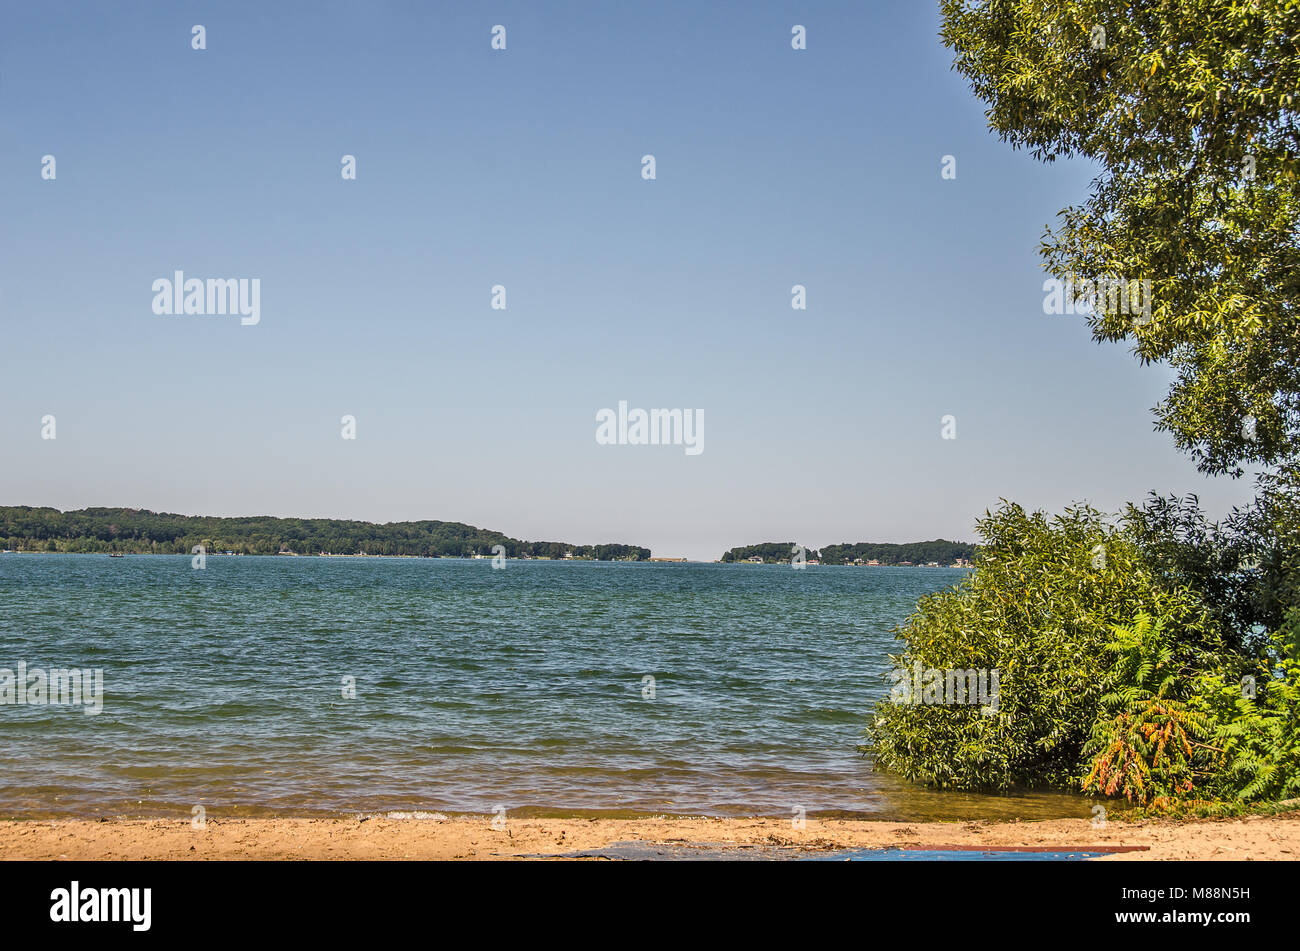 Belles nuances de vert et bleu ajouter à l'atmosphère de sérénité sur le lac Michigan Banque D'Images